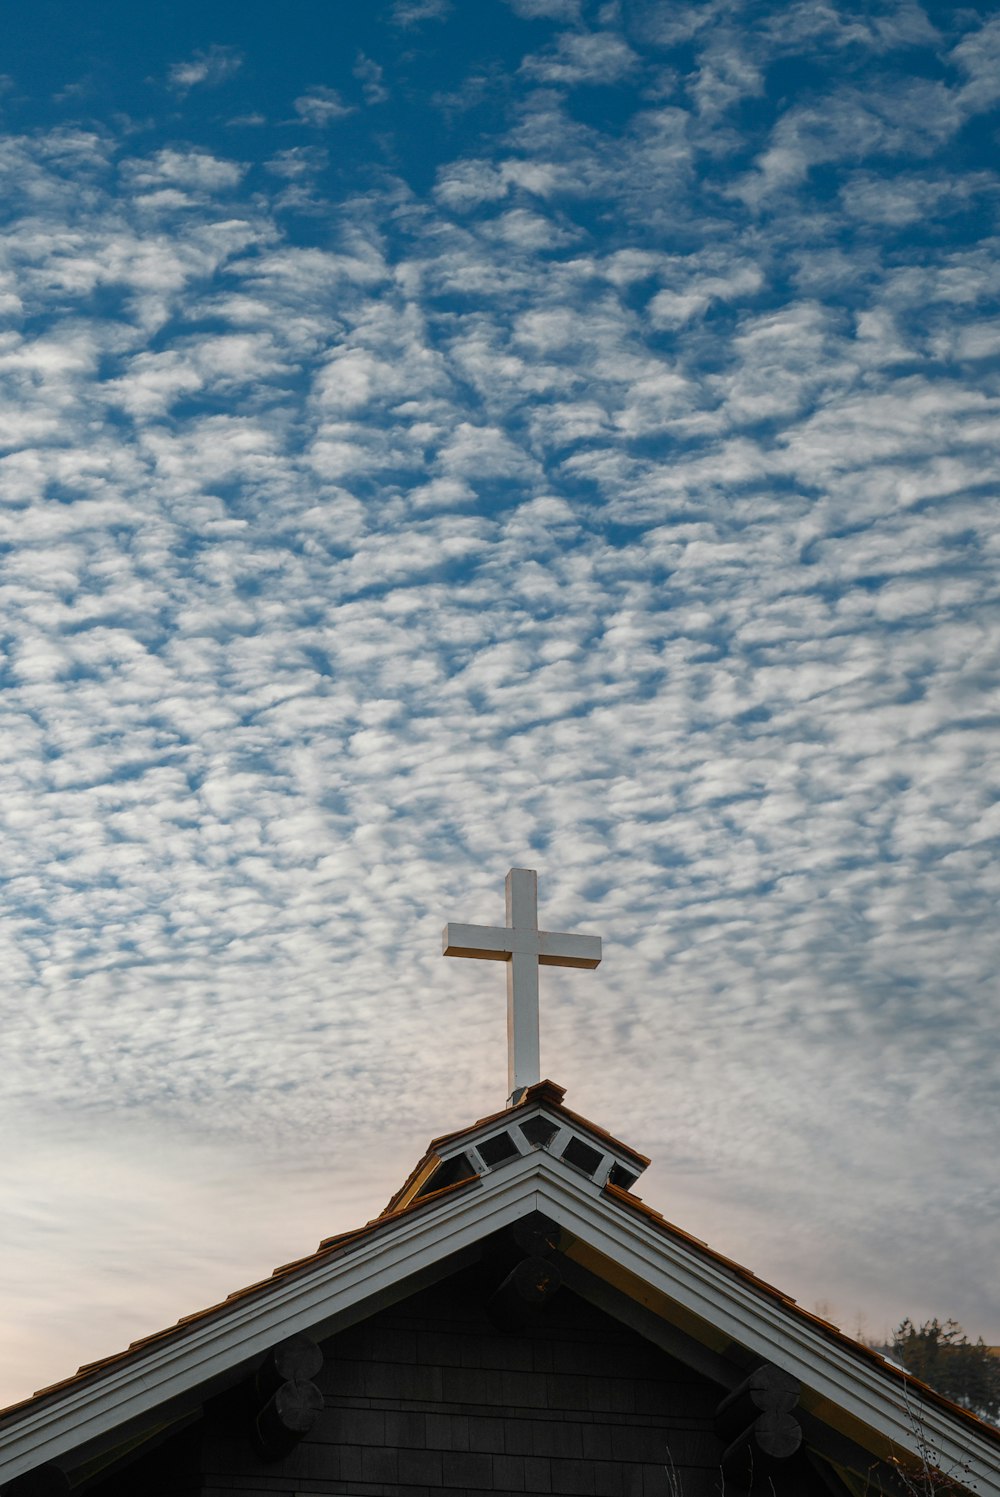 igreja marrom e branca sob céu azul e nuvens brancas durante o dia